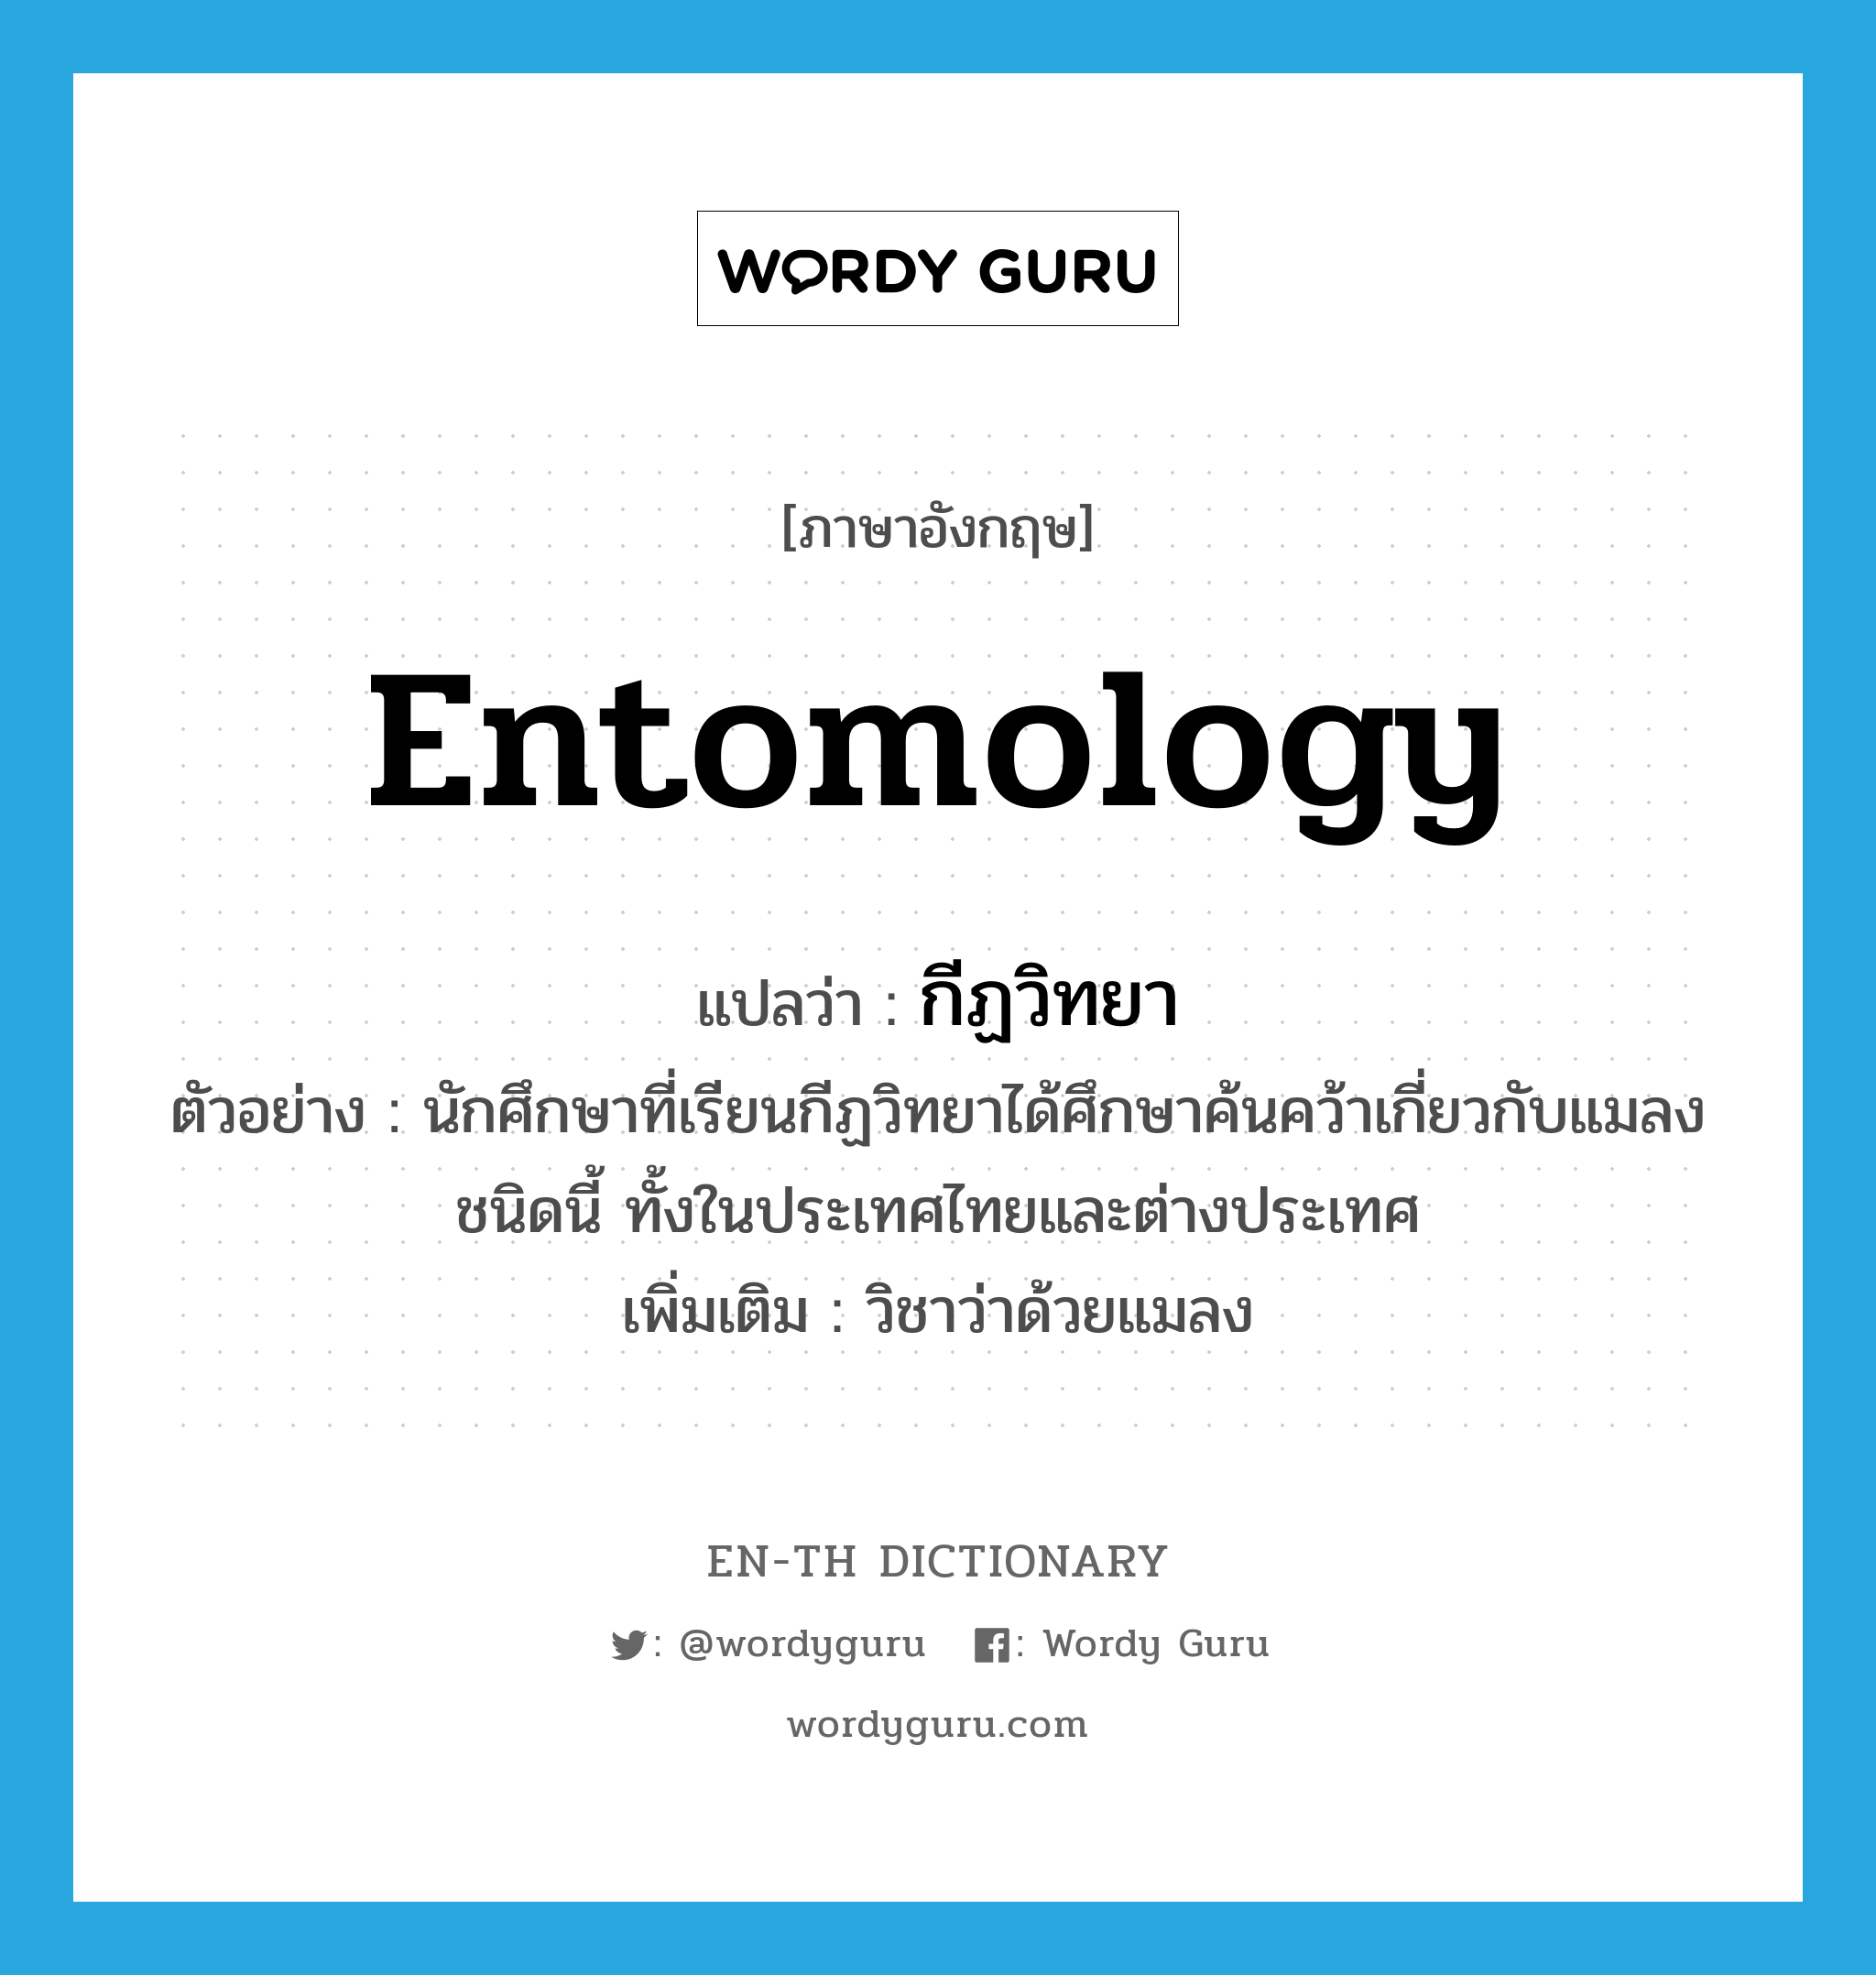 กีฏวิทยา ภาษาอังกฤษ?, คำศัพท์ภาษาอังกฤษ กีฏวิทยา แปลว่า entomology ประเภท N ตัวอย่าง นักศึกษาที่เรียนกีฏวิทยาได้ศึกษาค้นคว้าเกี่ยวกับแมลงชนิดนี้ ทั้งในประเทศไทยและต่างประเทศ เพิ่มเติม วิชาว่าด้วยแมลง หมวด N